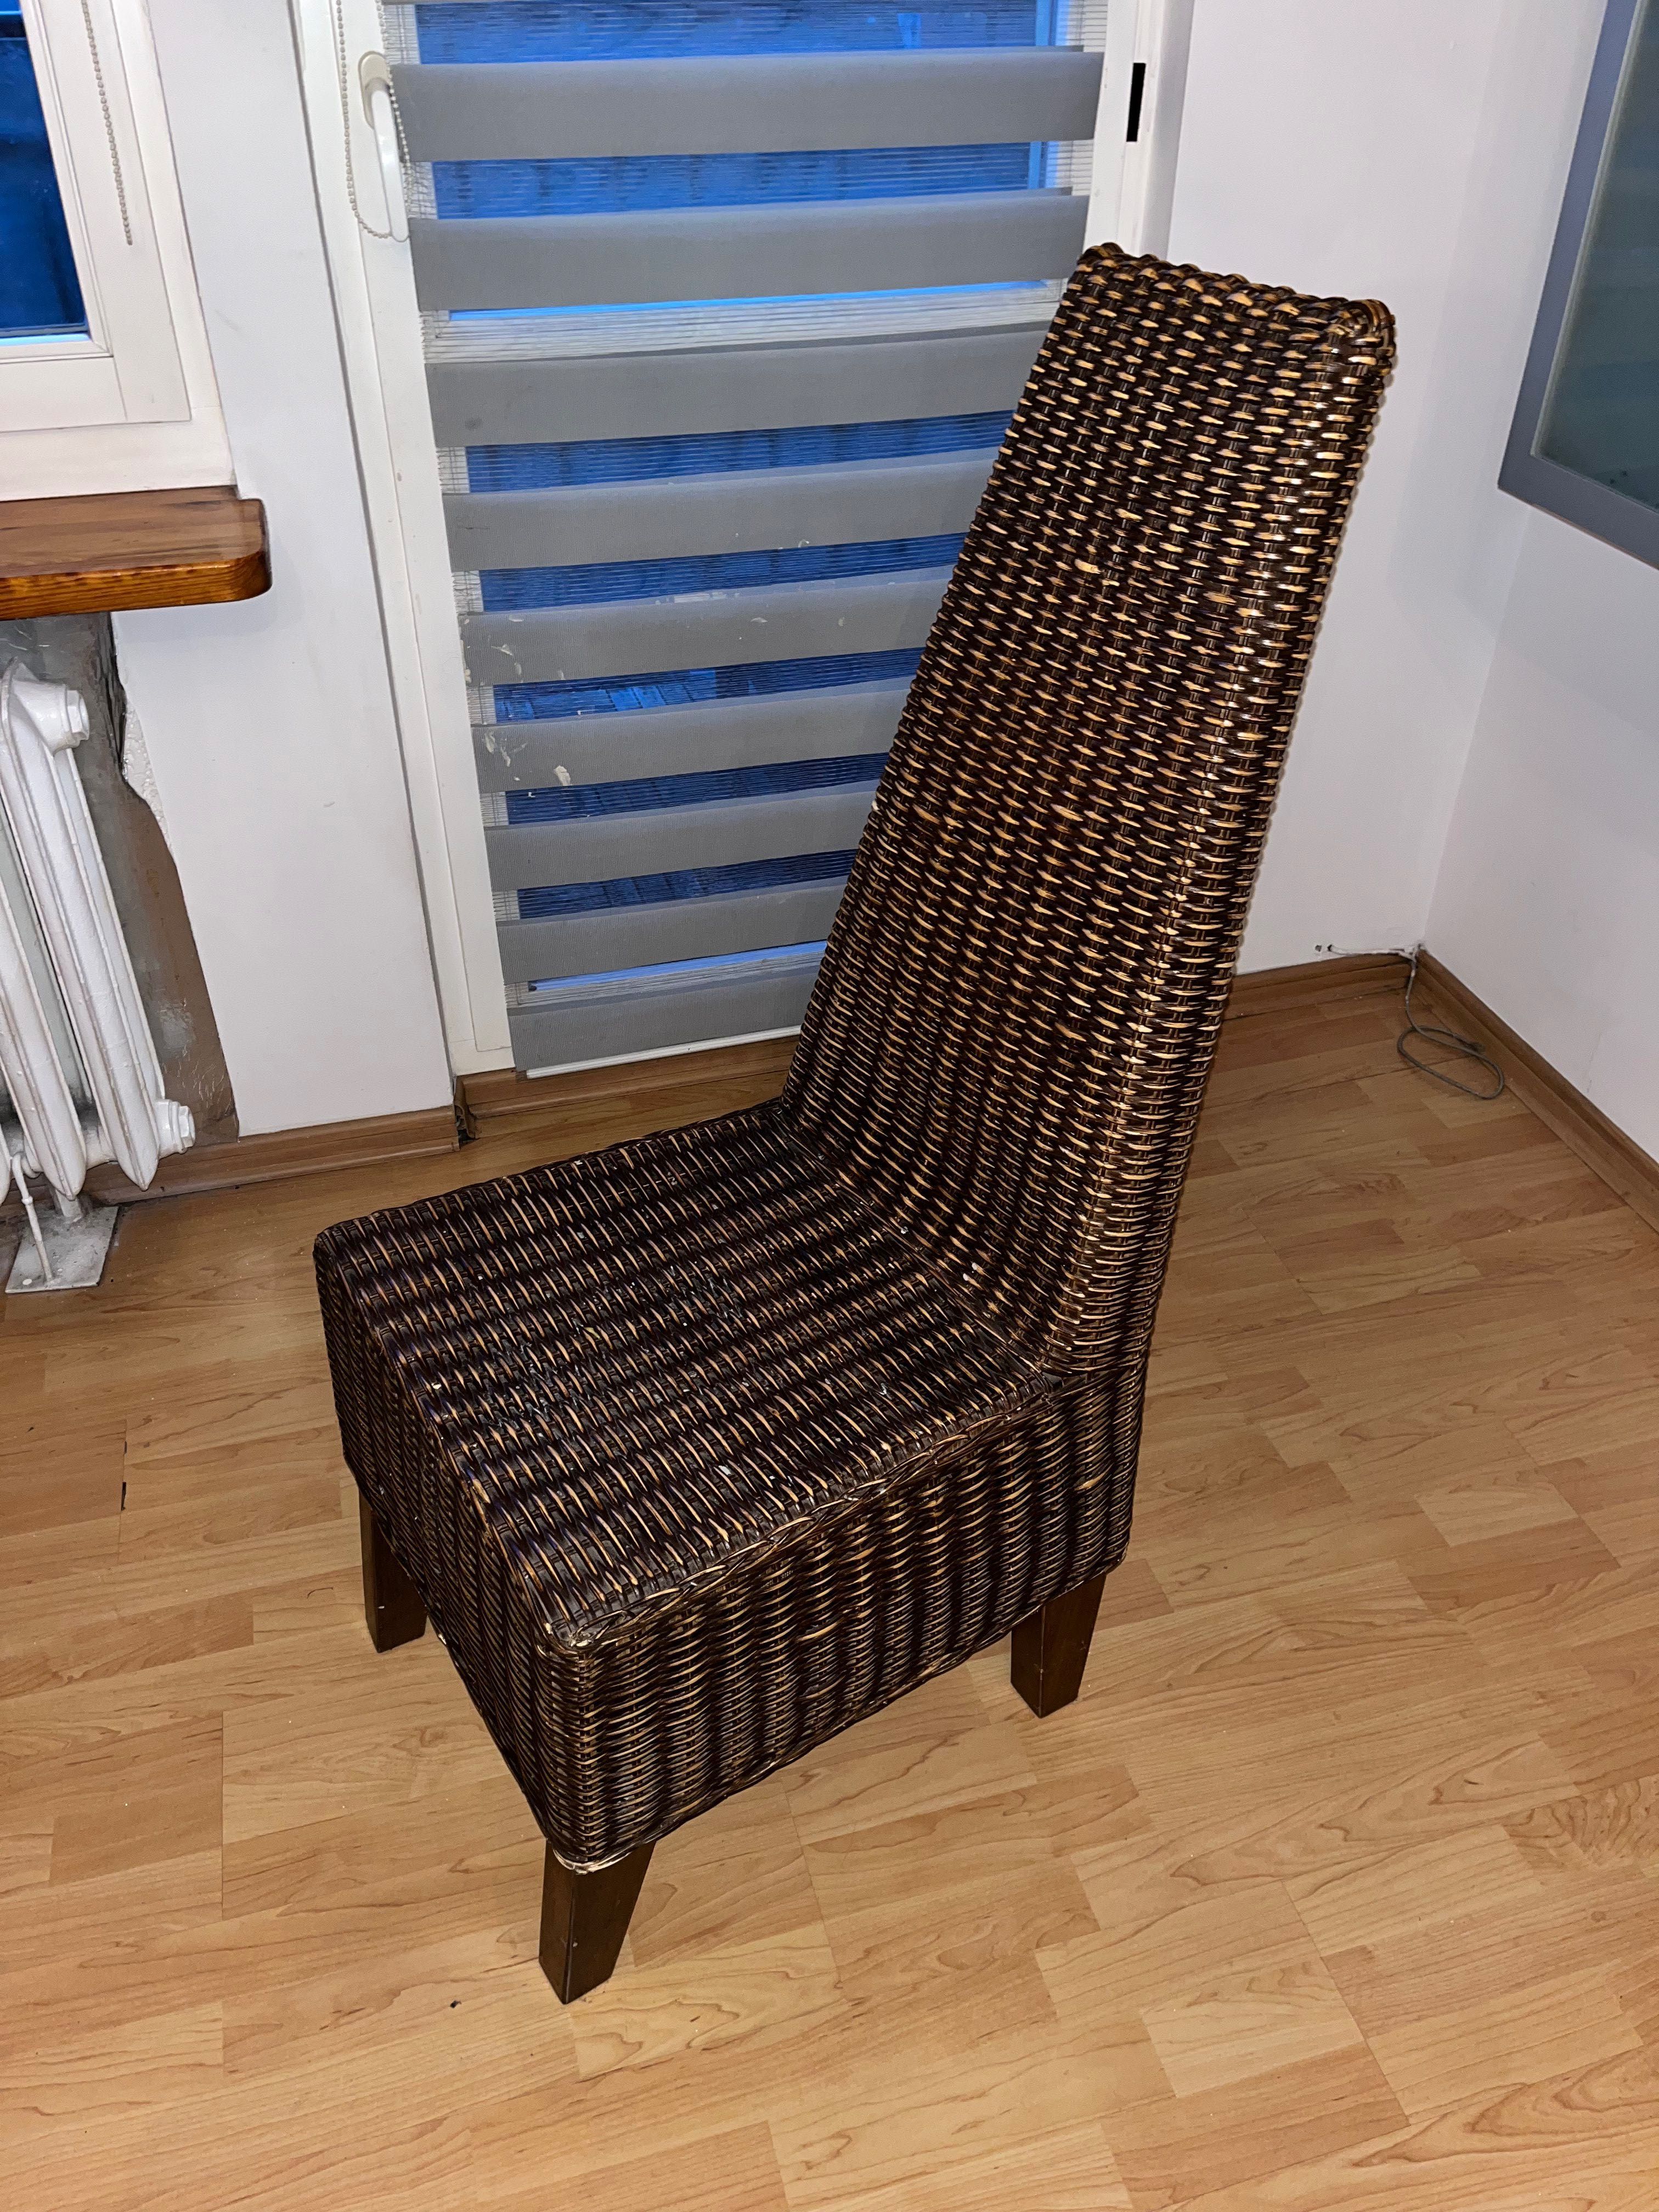 Drewniany stół i 4 ratanowe (wiklinowe) krzesła